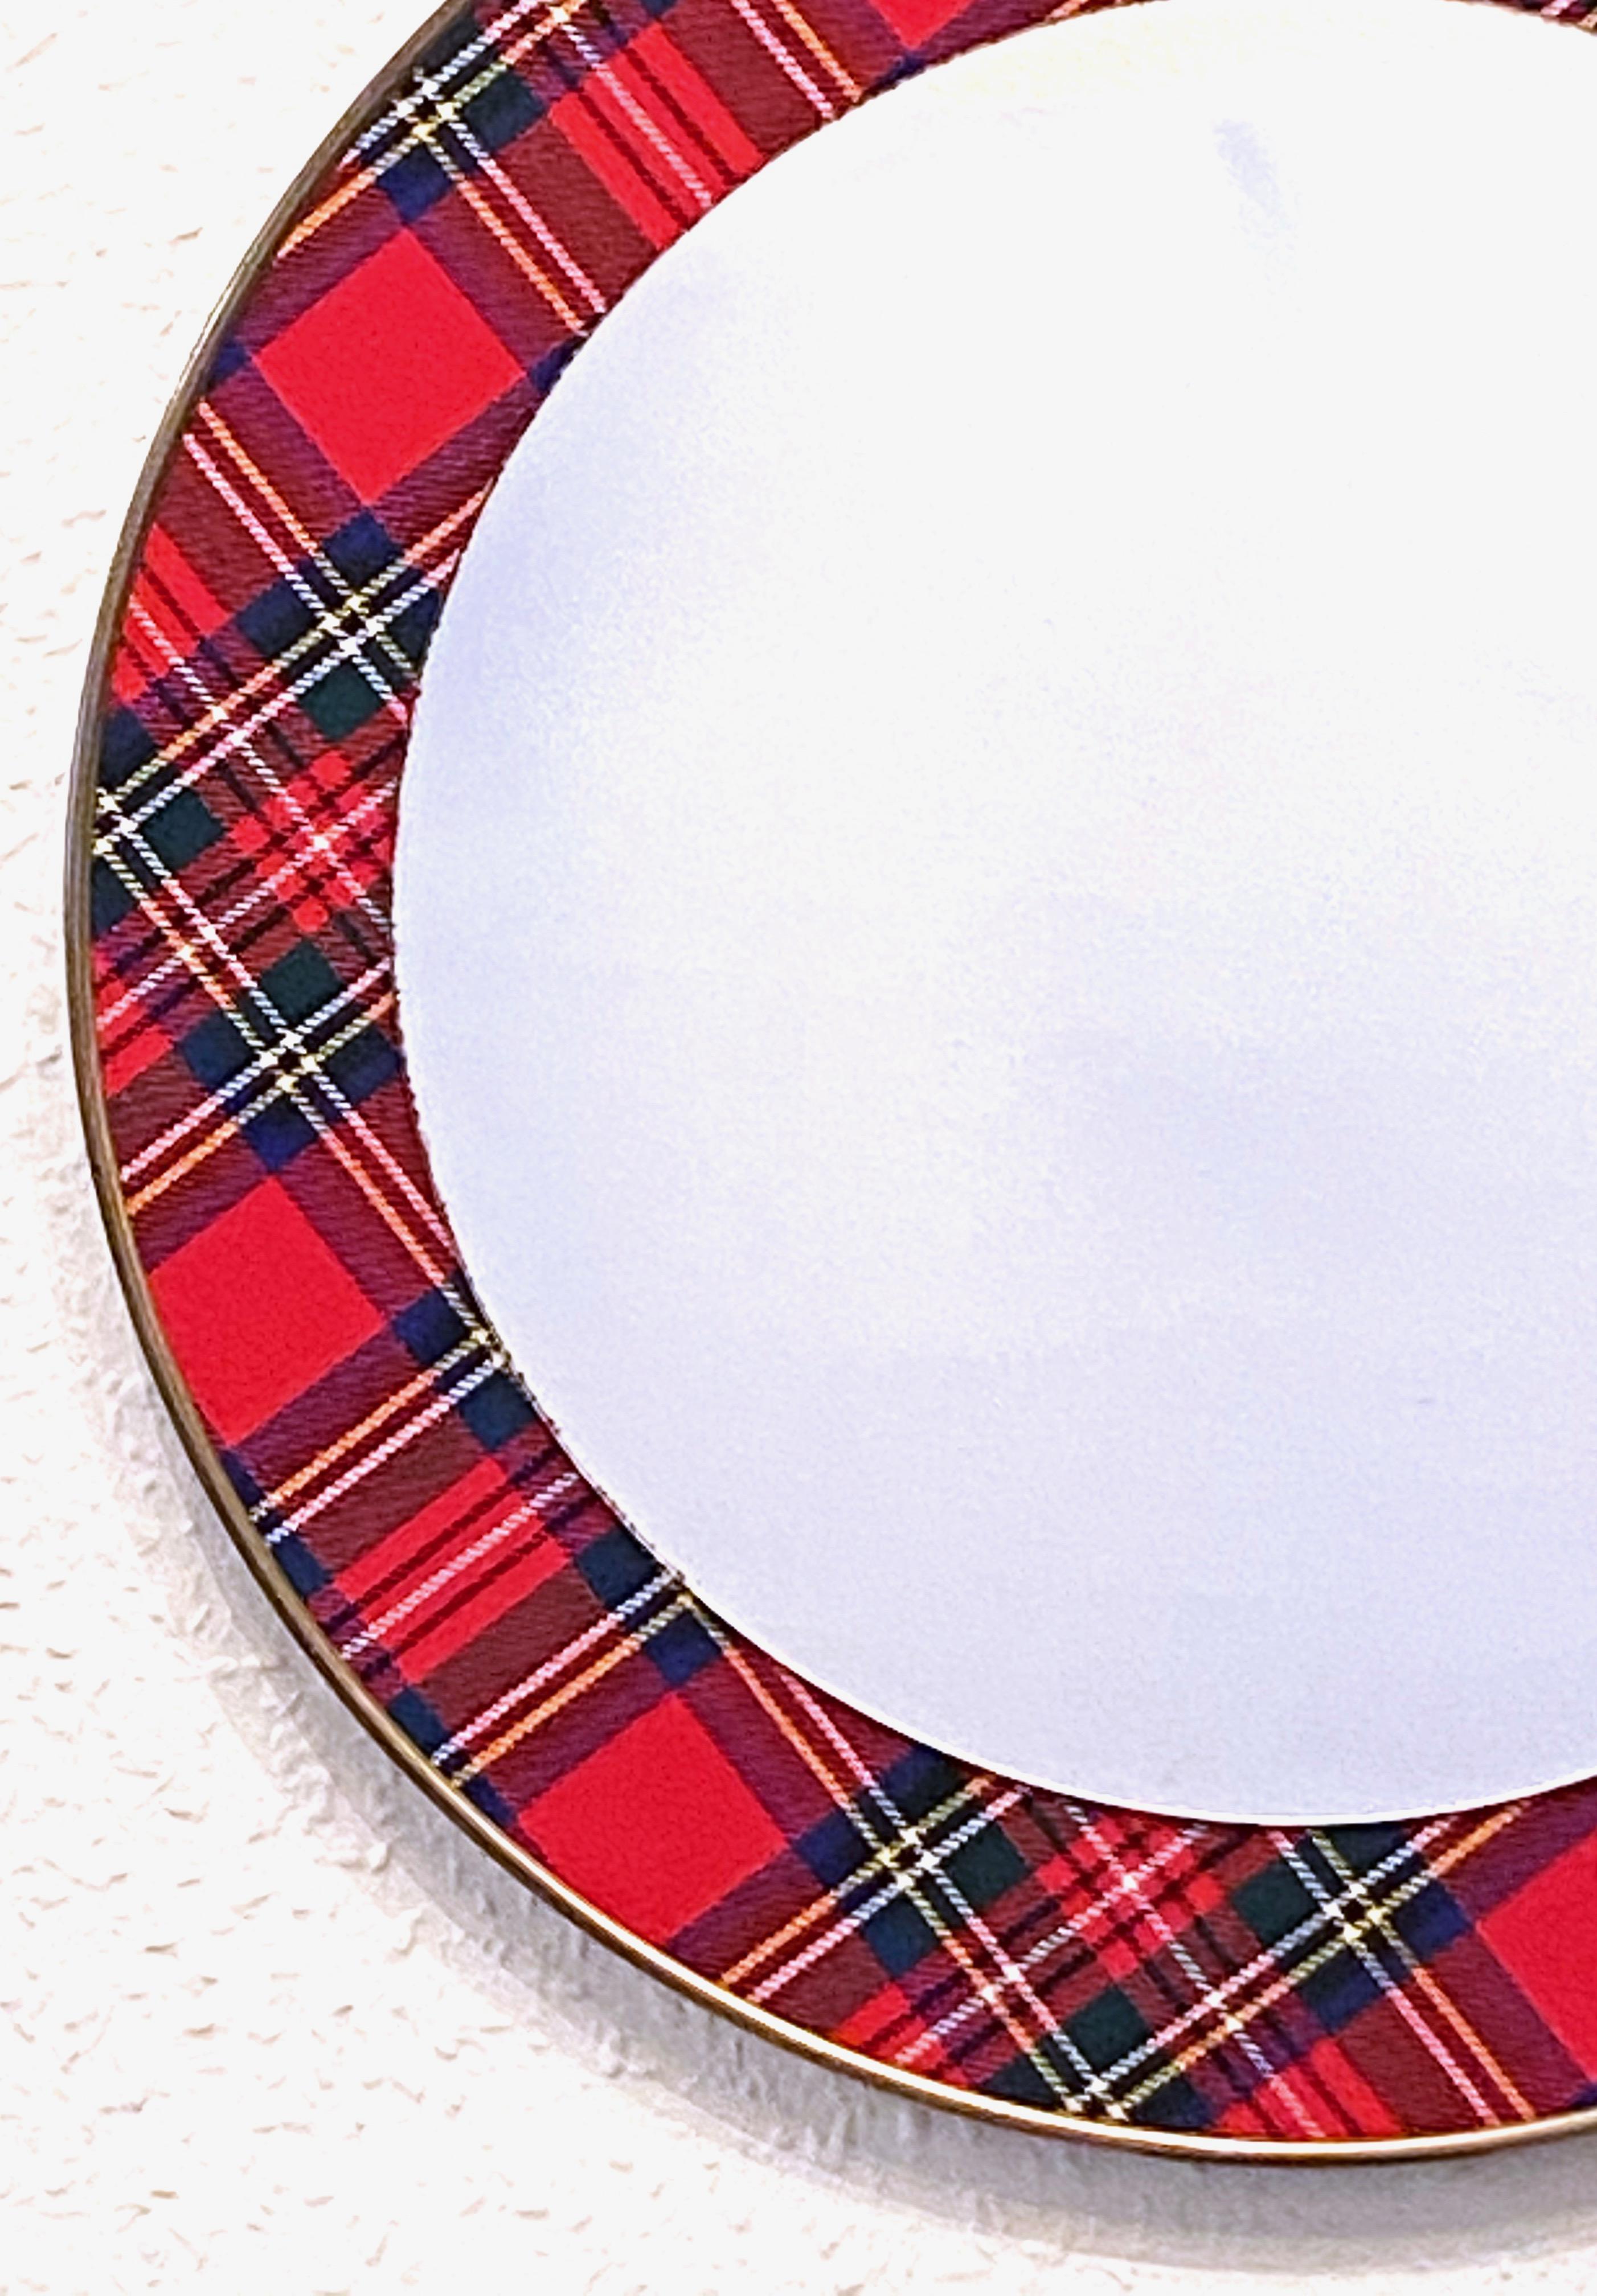 Atemberaubender Mid-Century Modern Wandspiegel im schottischen Clan Tartan Design. Zeigen Sie Ihre Familienrouten. Der Wandspiegel hat ein schönes Design und verleiht einem Raum eine eklektische Note. Der Spiegel selbst hat einen Durchmesser von ca.